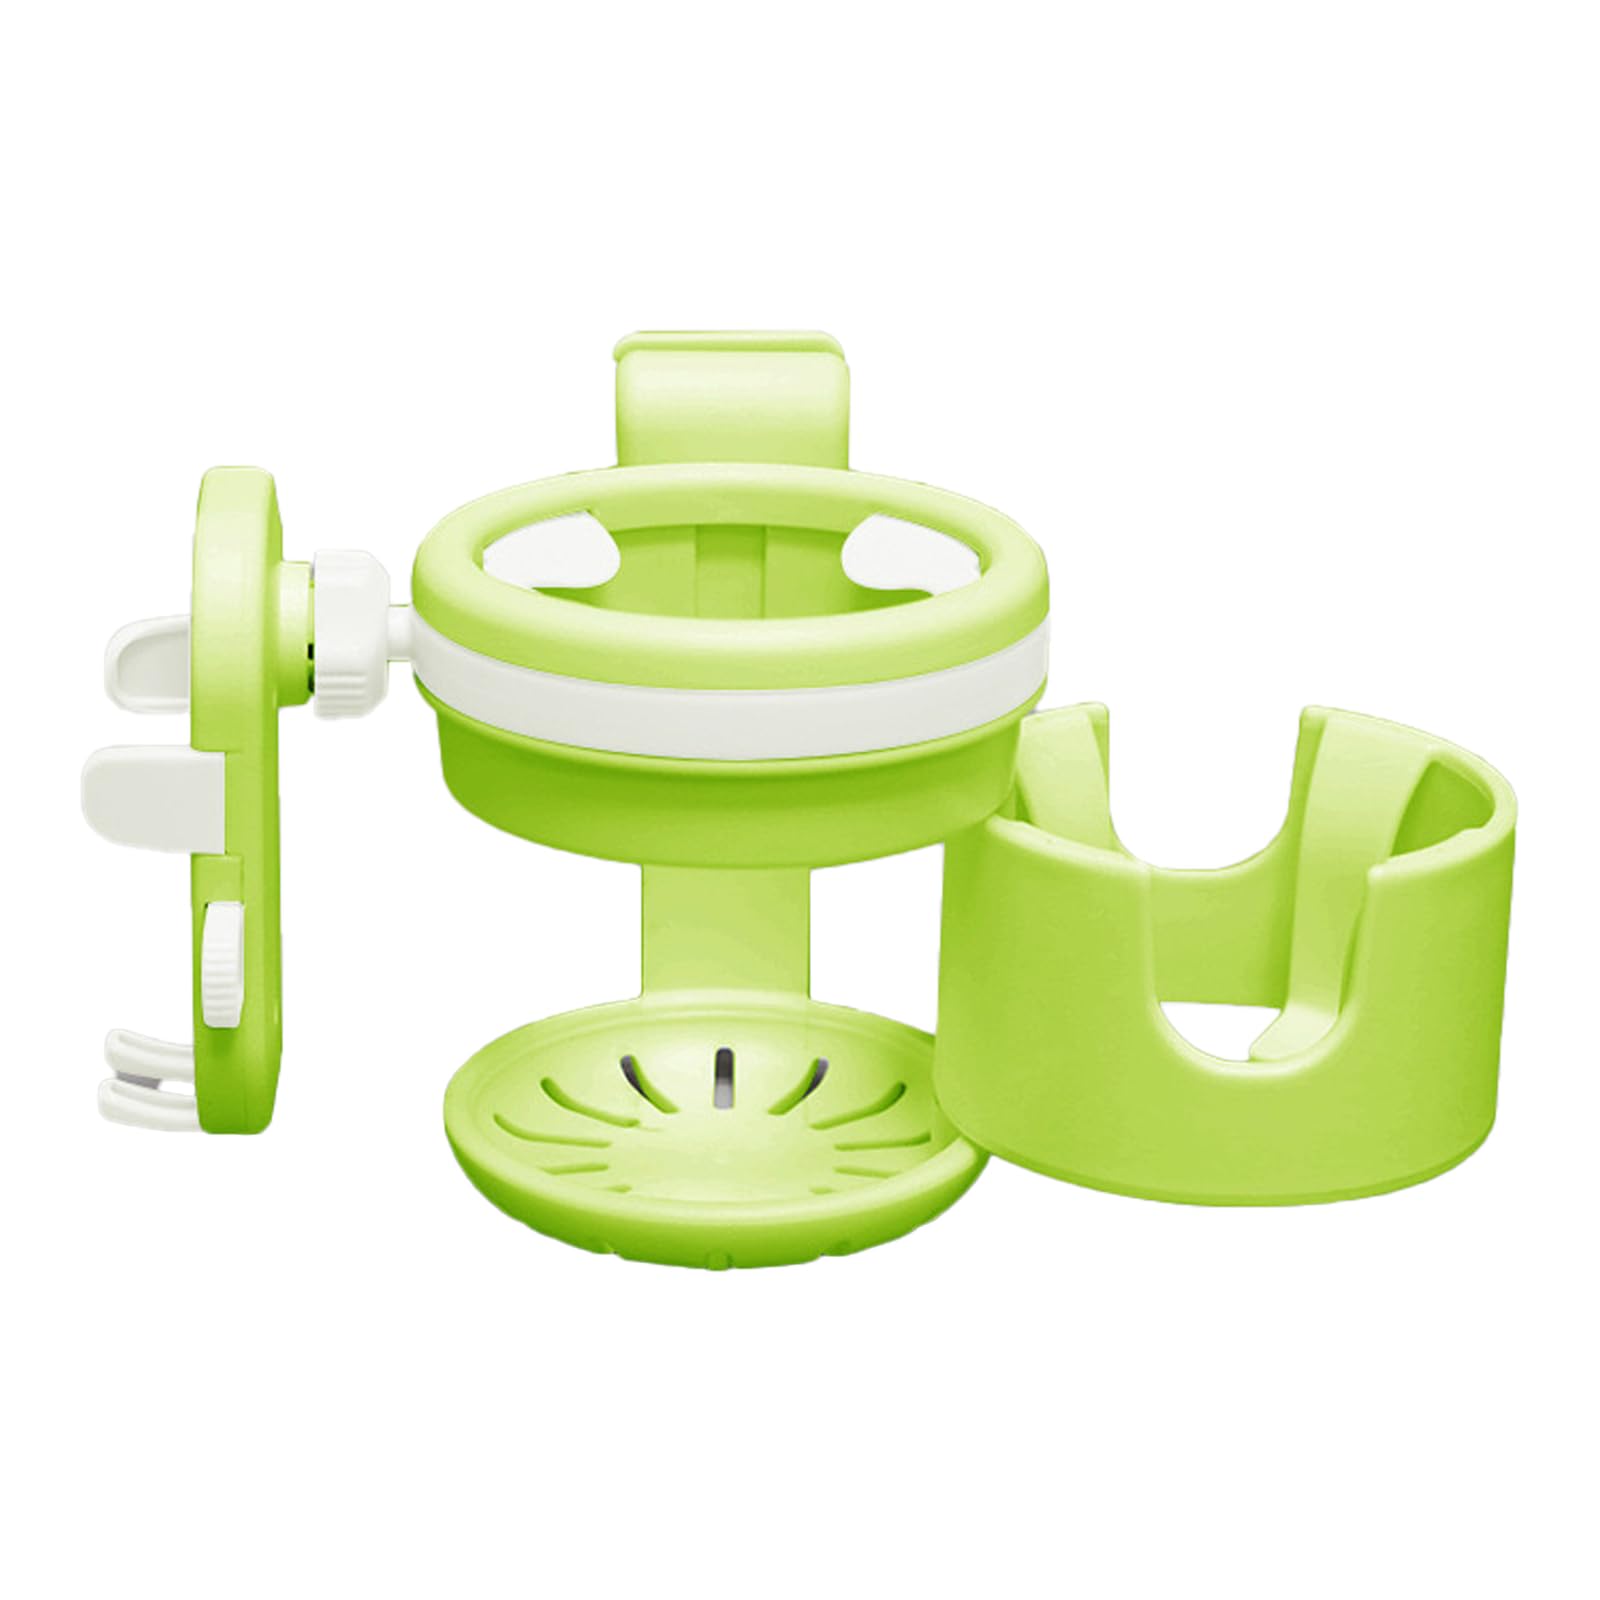 Liemuao Universal-Getränkehalter für Babys, Kinderwagen / Fahrrad, 3-in-1 Milchflaschenhalter mit Telefonhalterung – Zubehör für Kinderwagen (grün) von Koomuao